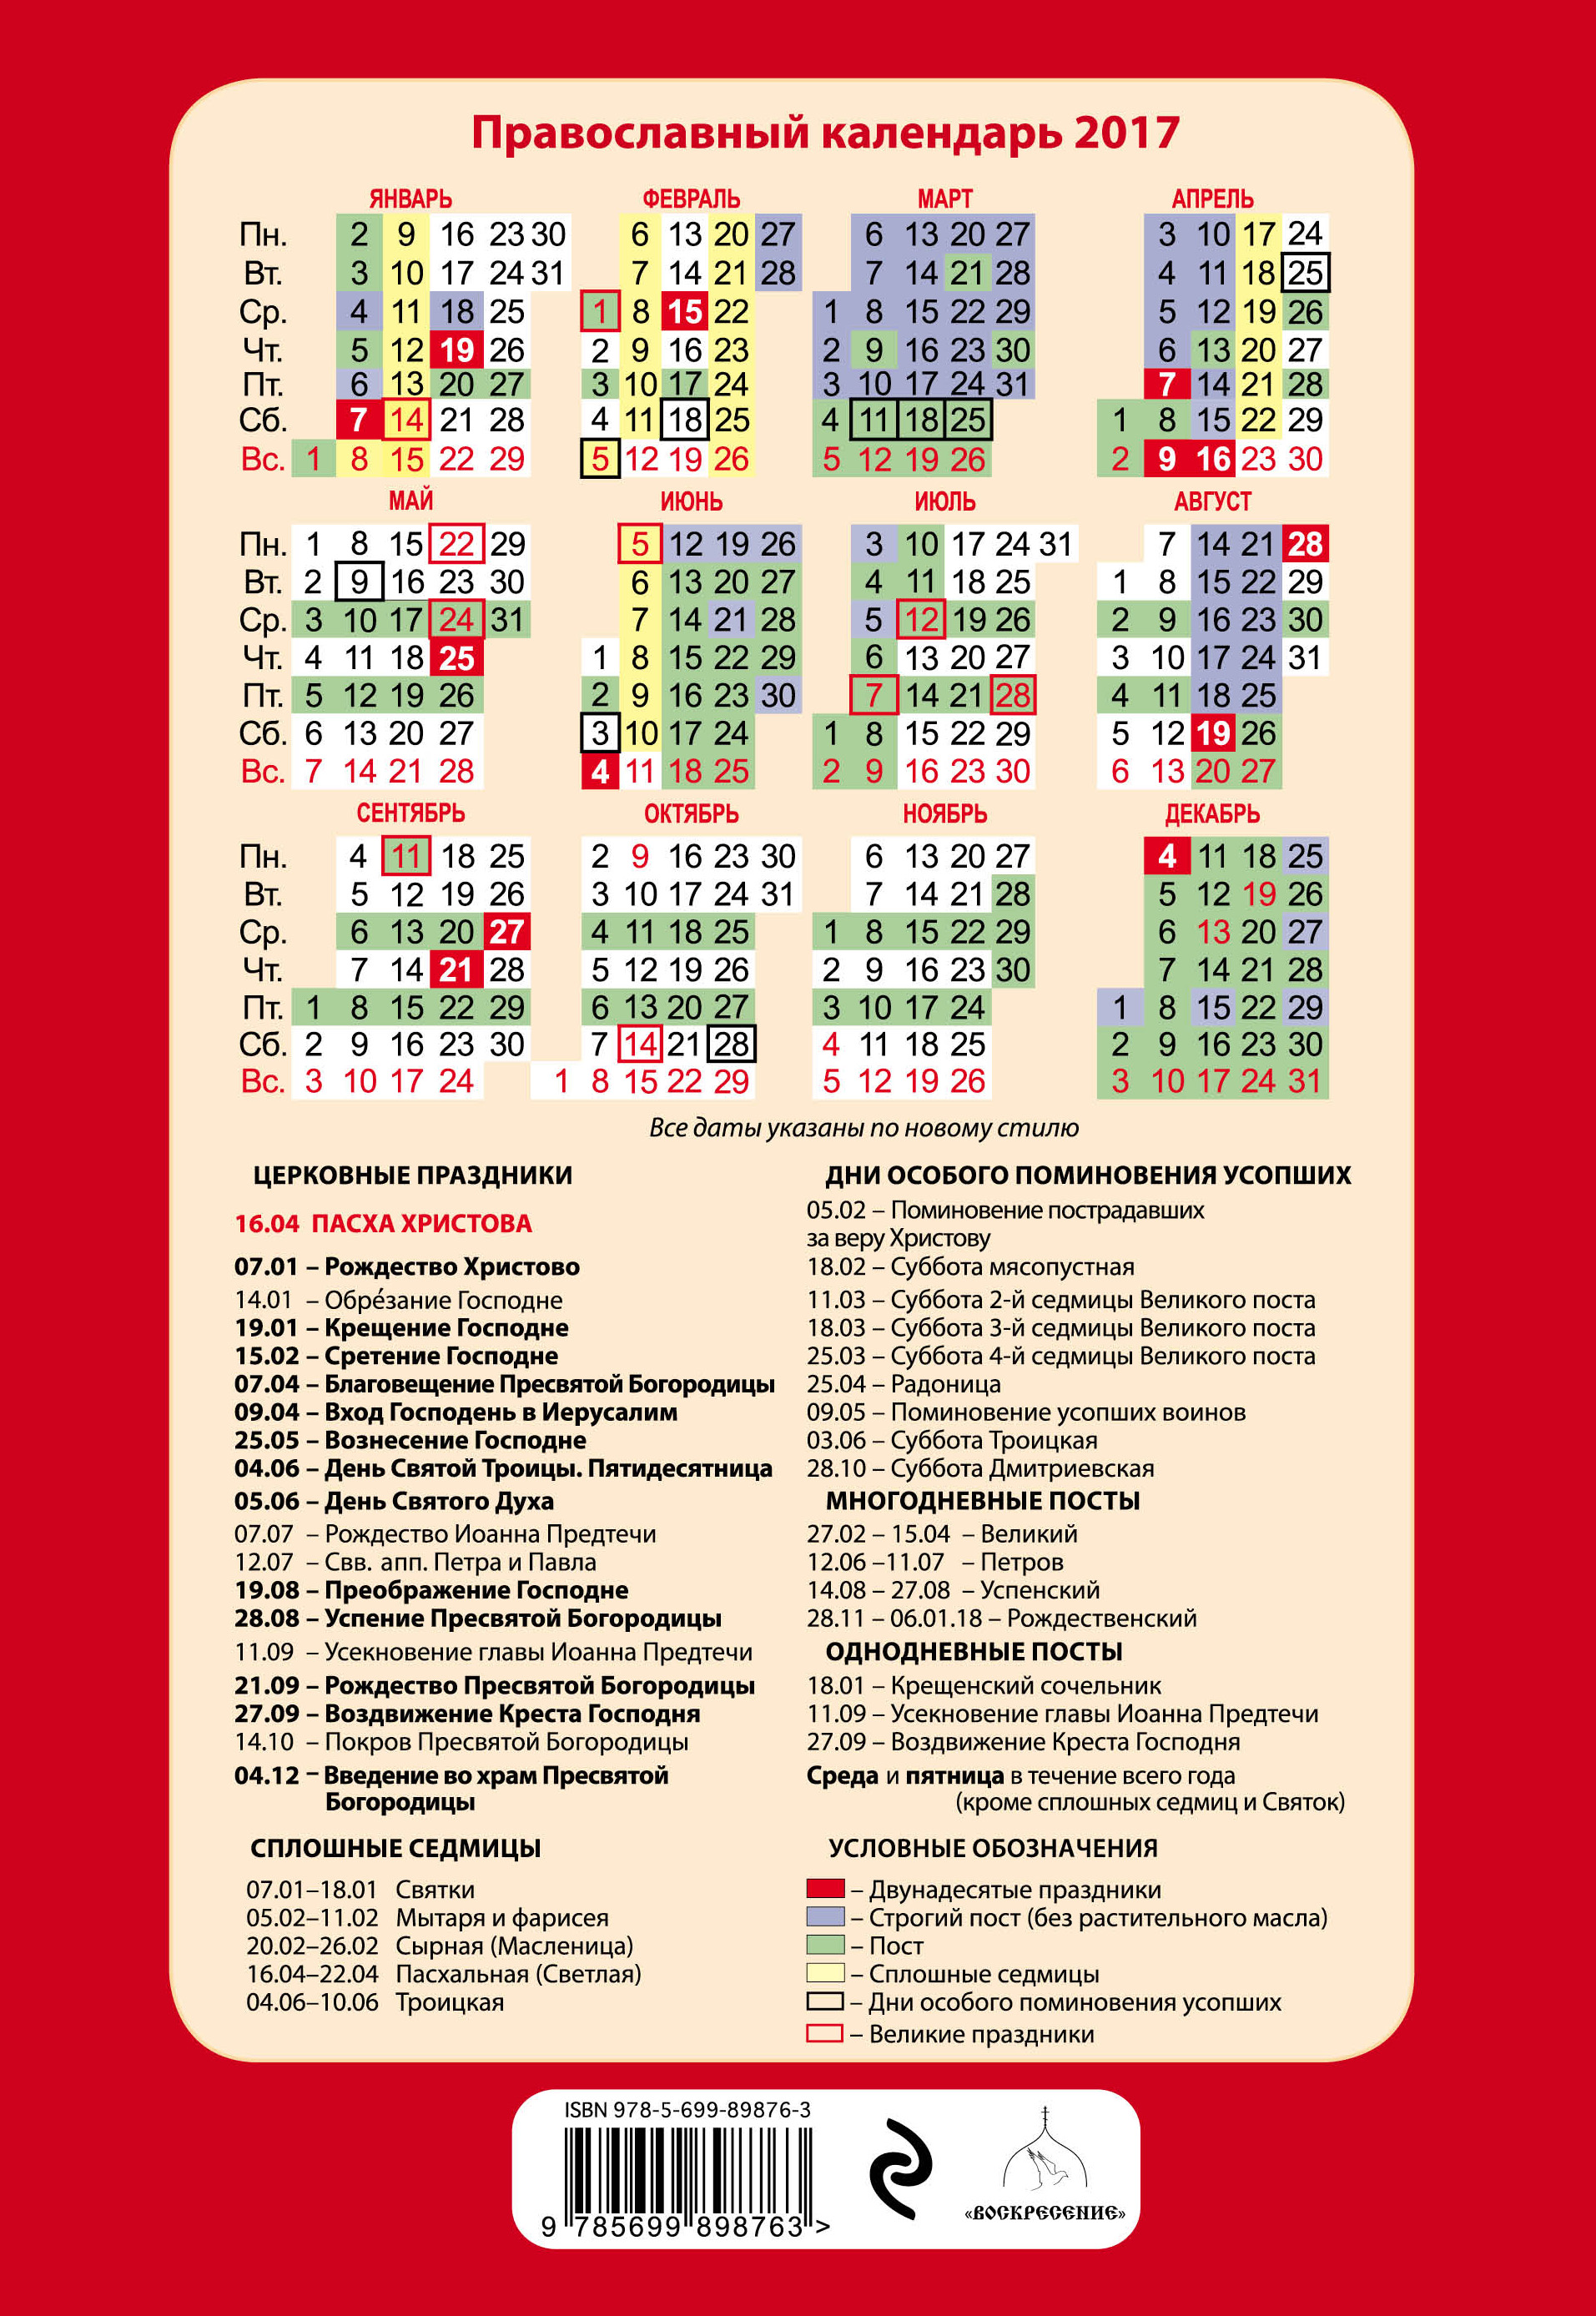 2017 год православные. Православный календарь. Православный календарь на 2017 год. Календарь православных праздников 2017. Церковные праздники на каждый день.